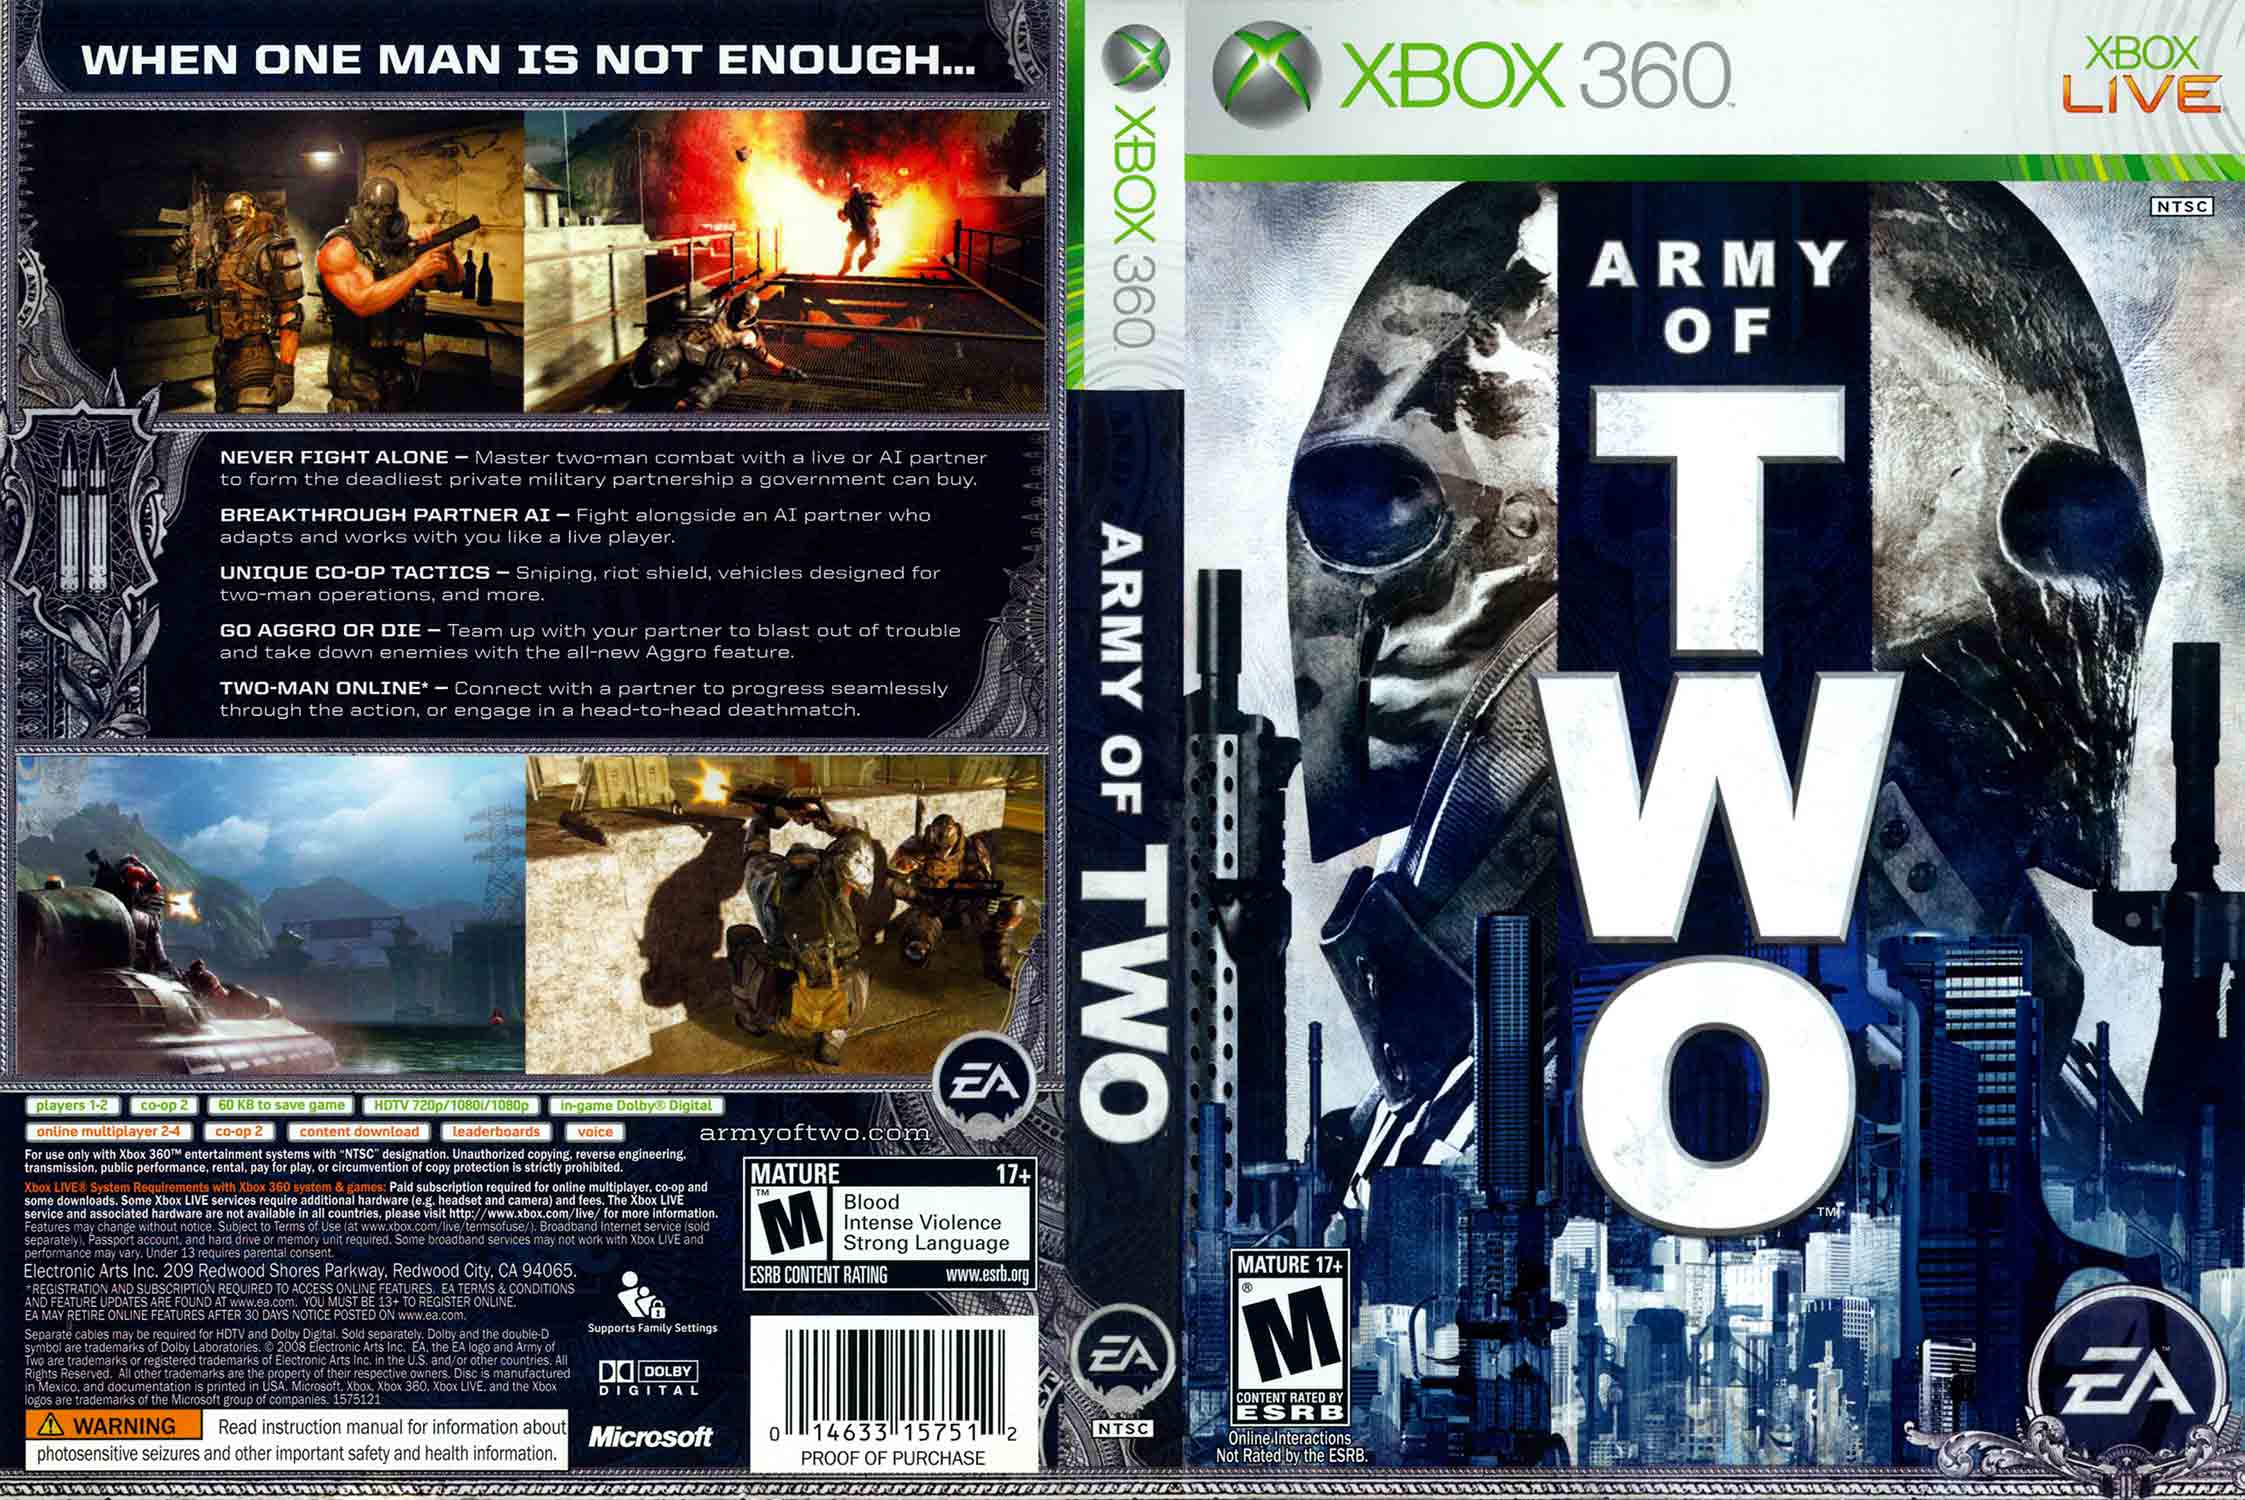 Xbox 360 life. Игра на Xbox 360 Army of two. Army of two Xbox 360 обложка. Army of two на Икс бокс 360. Army of two ps3 обложка.